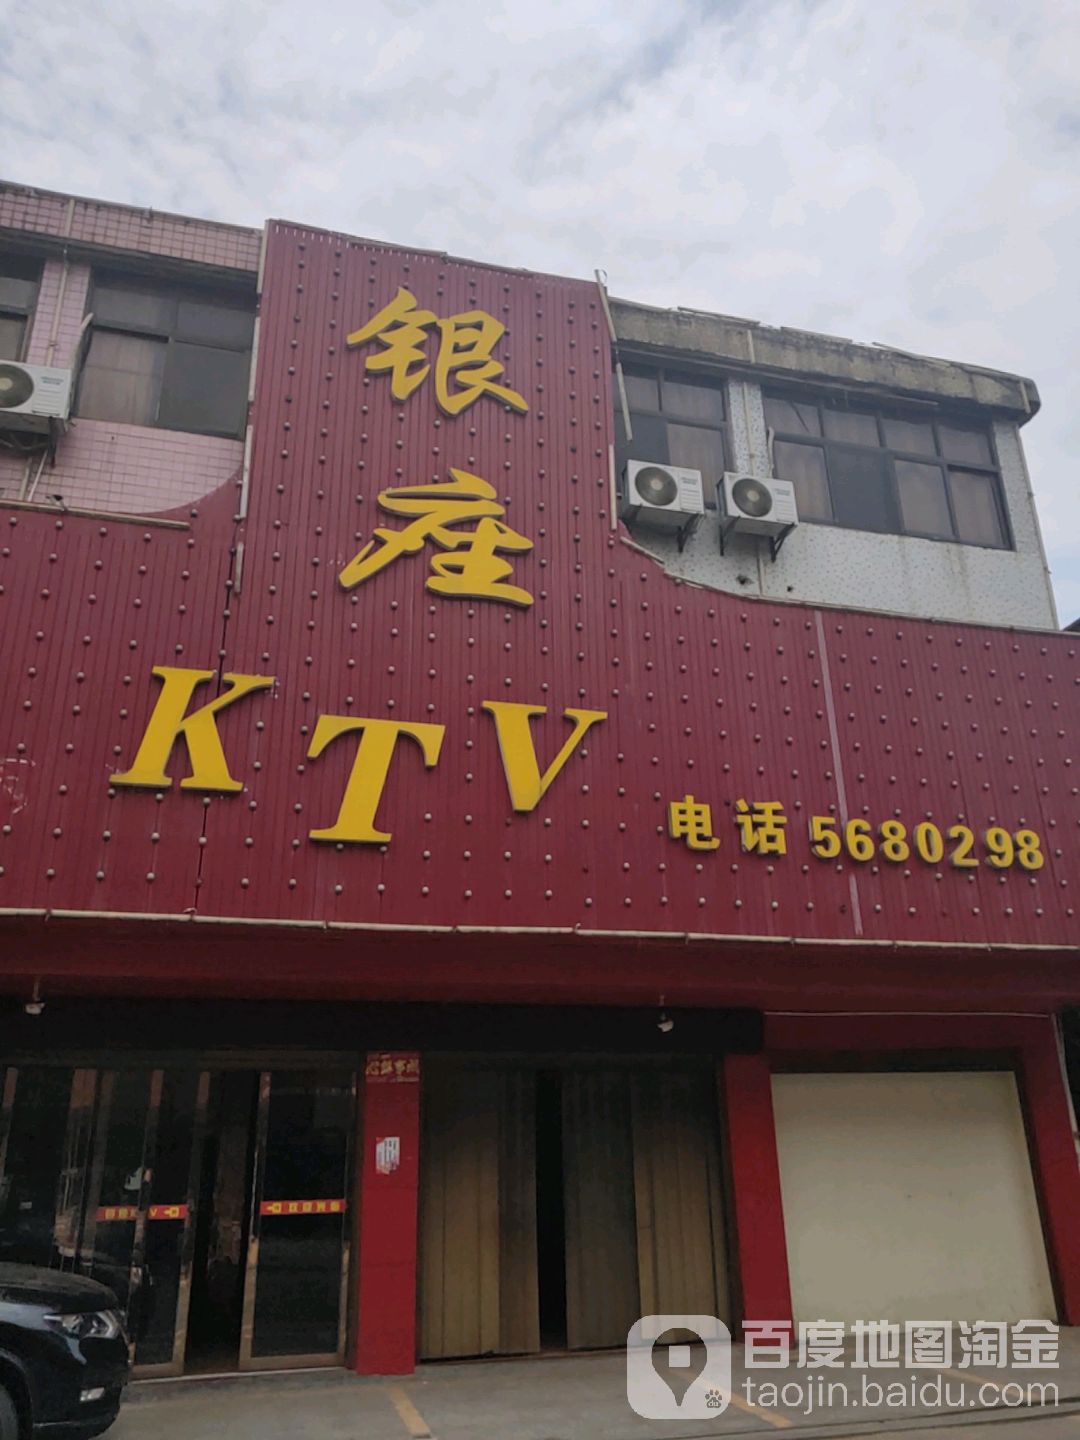 銀座KTV